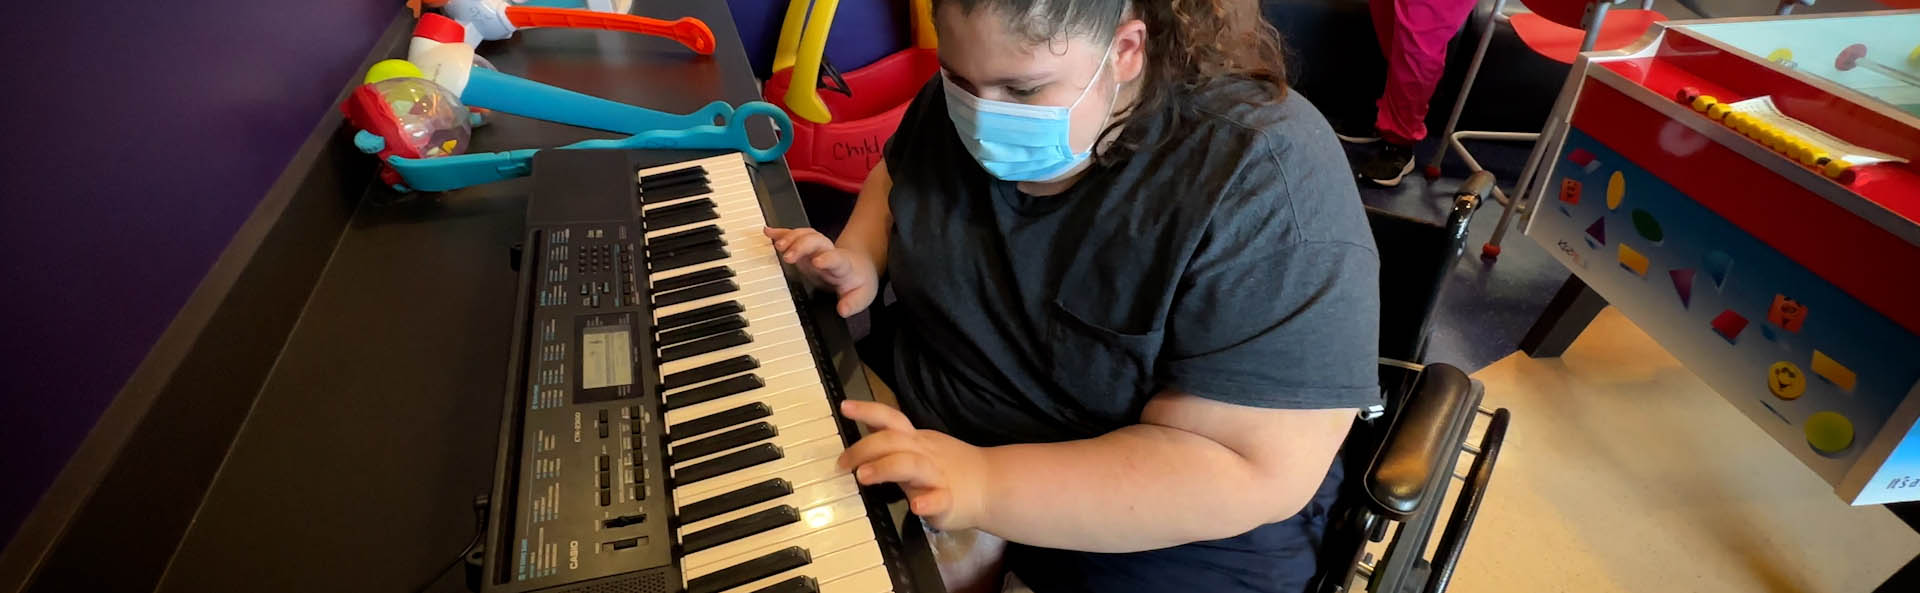 Ребенок в маске играет на клавиатуре